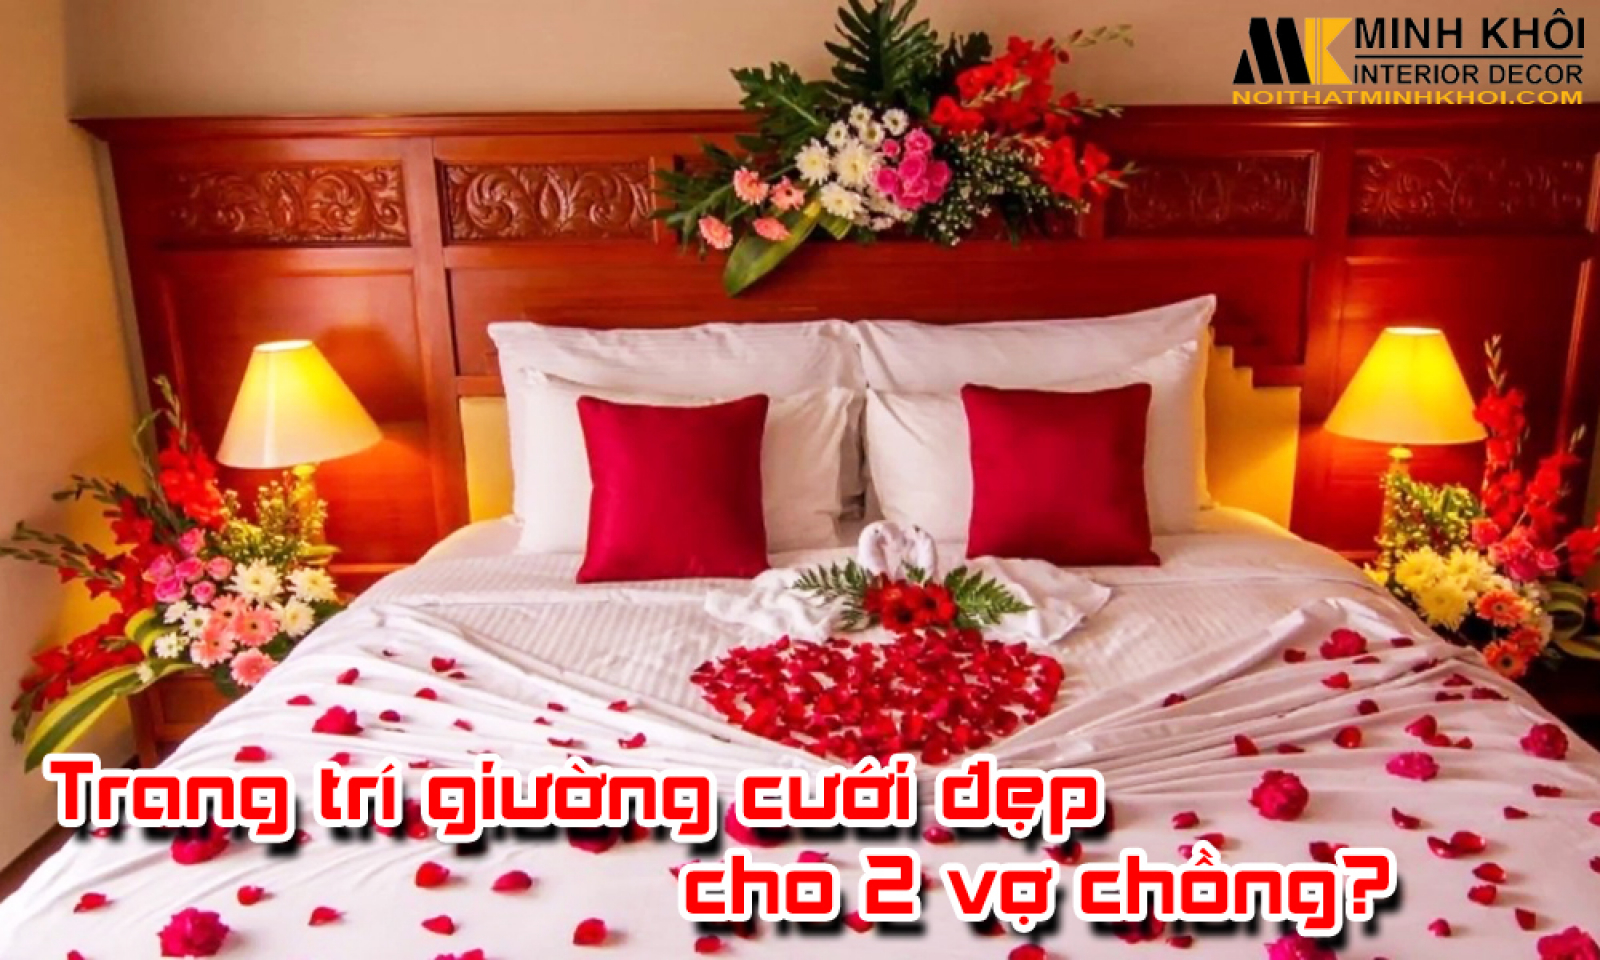 Cách trang trí giường cưới đẹp cho hai vợ chồng?